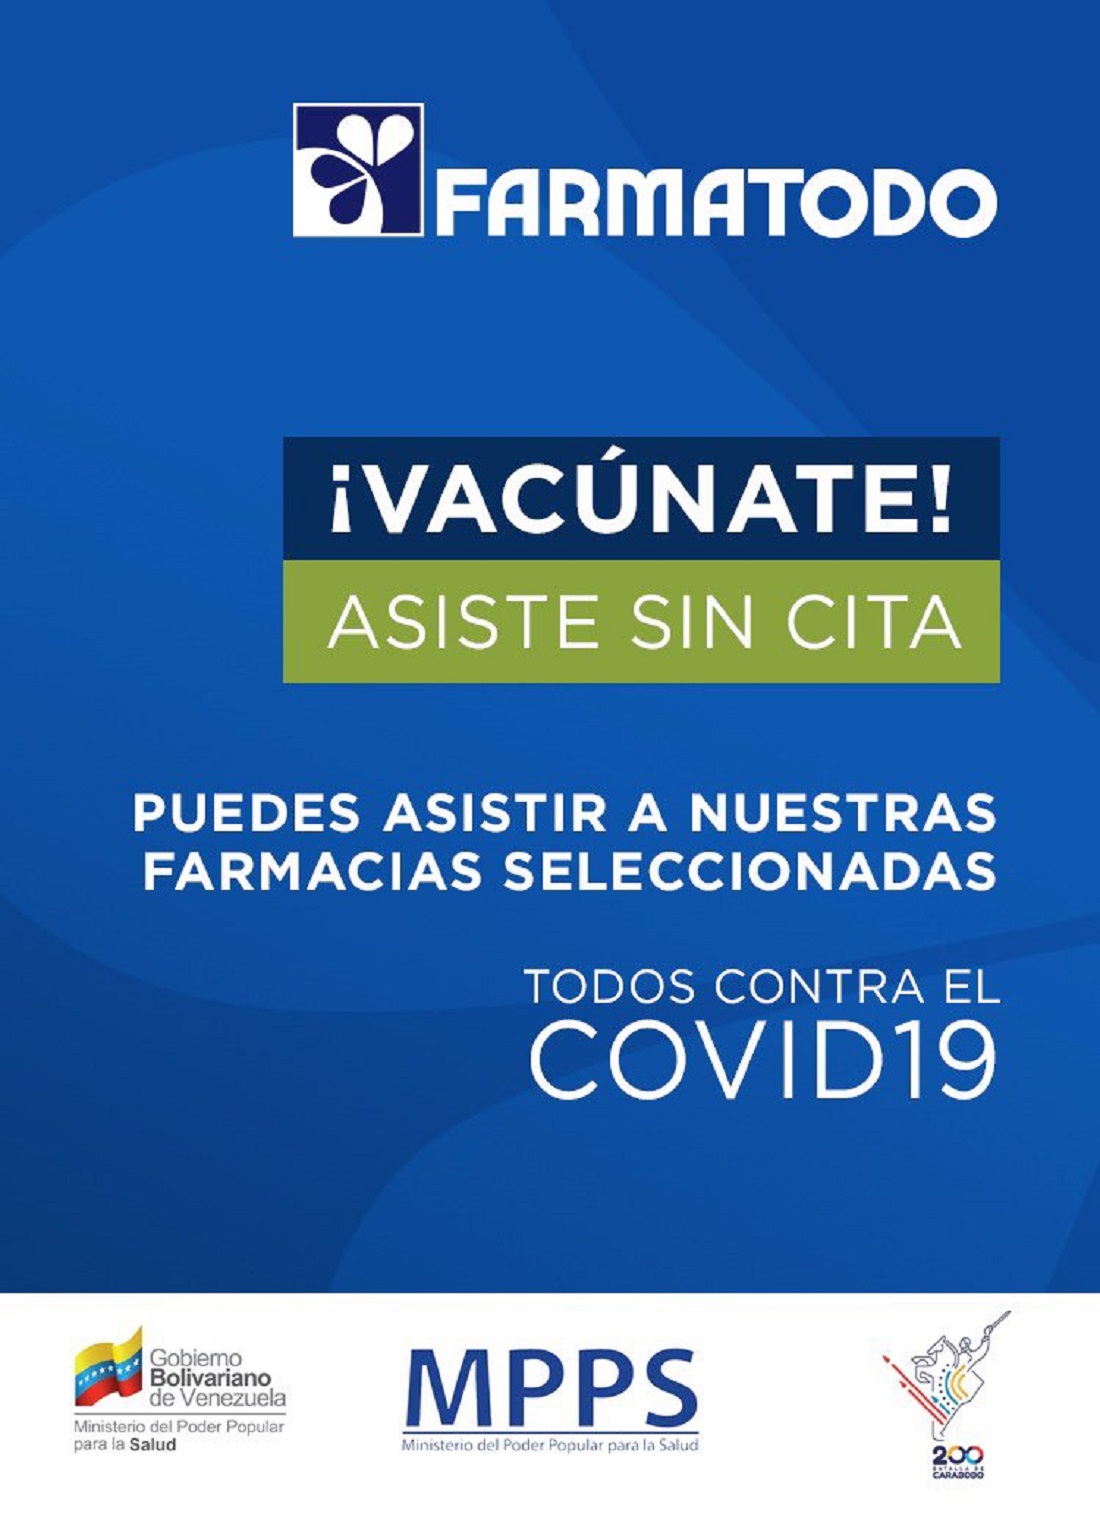 Farmatodo y Locatel vacunación covid-19 - Farmatodo y Locatel vacunación covid-19